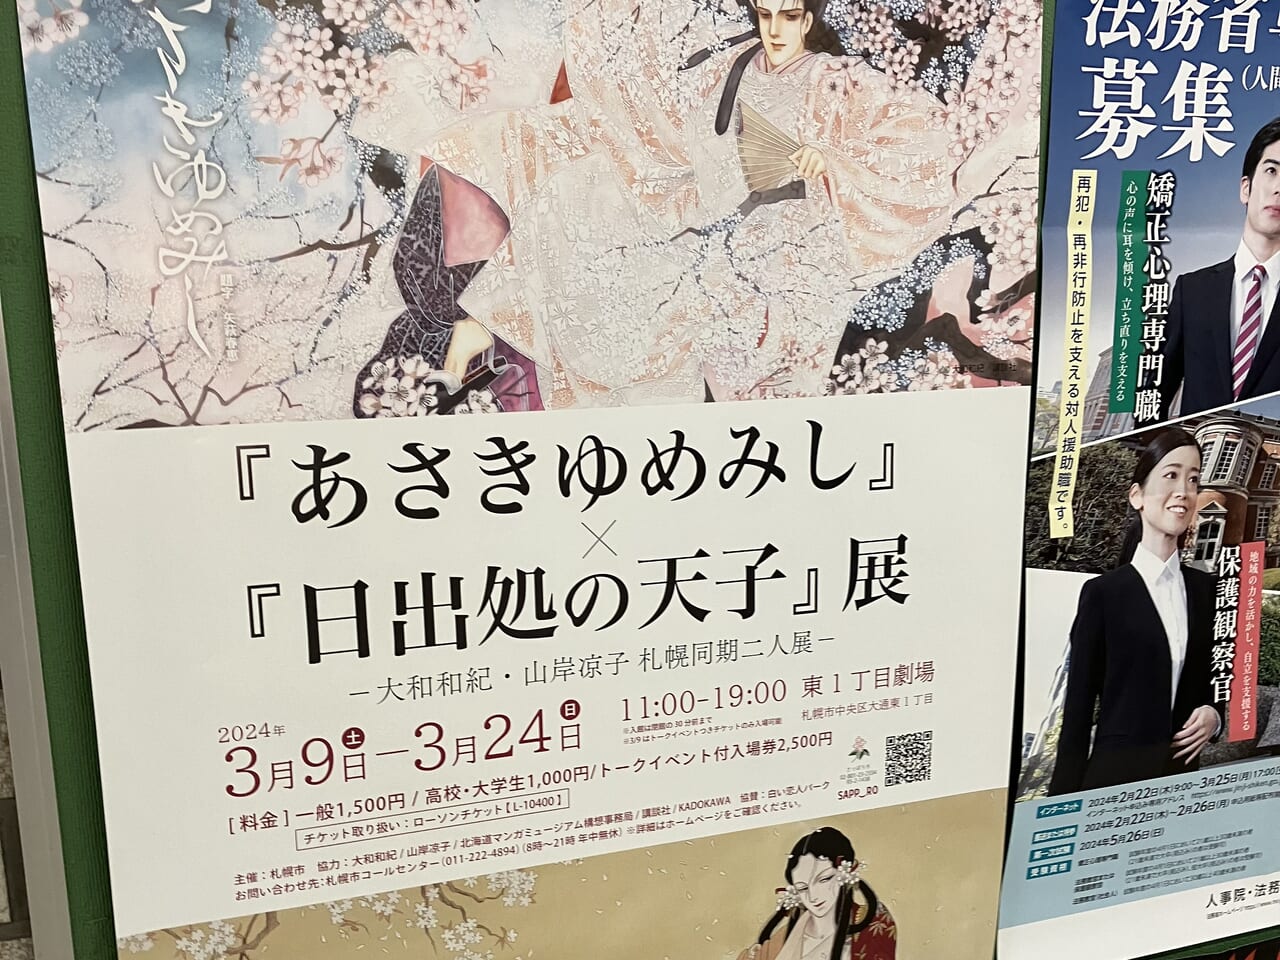 あさきゆめみし展のポスター